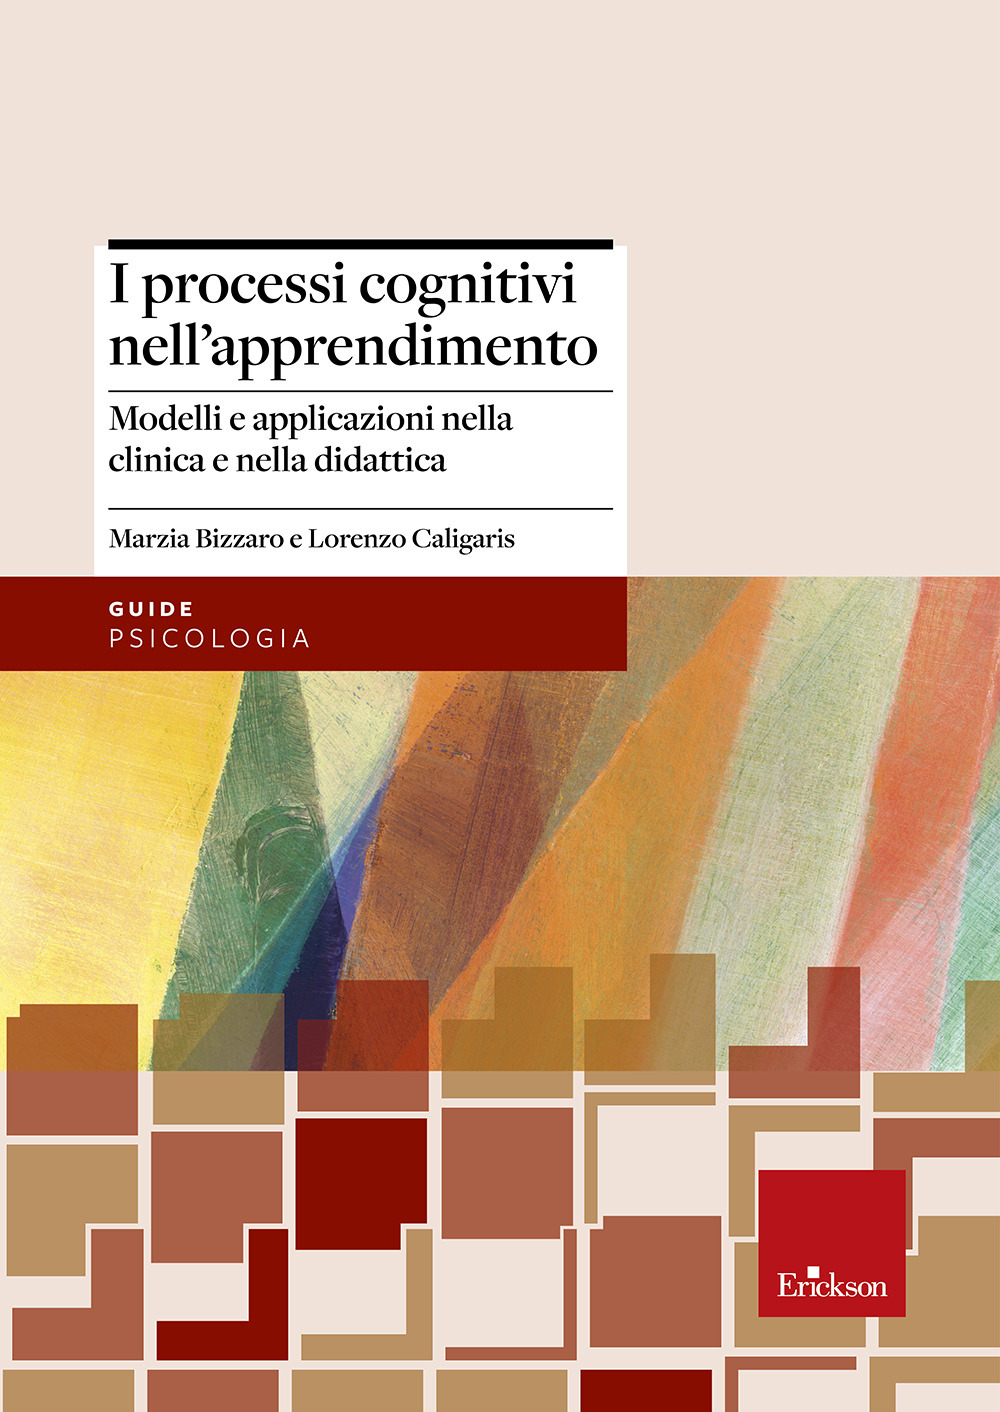 I processi cognitivi nell'apprendimento. Modelli e applicazioni nella clinica e nella didattica